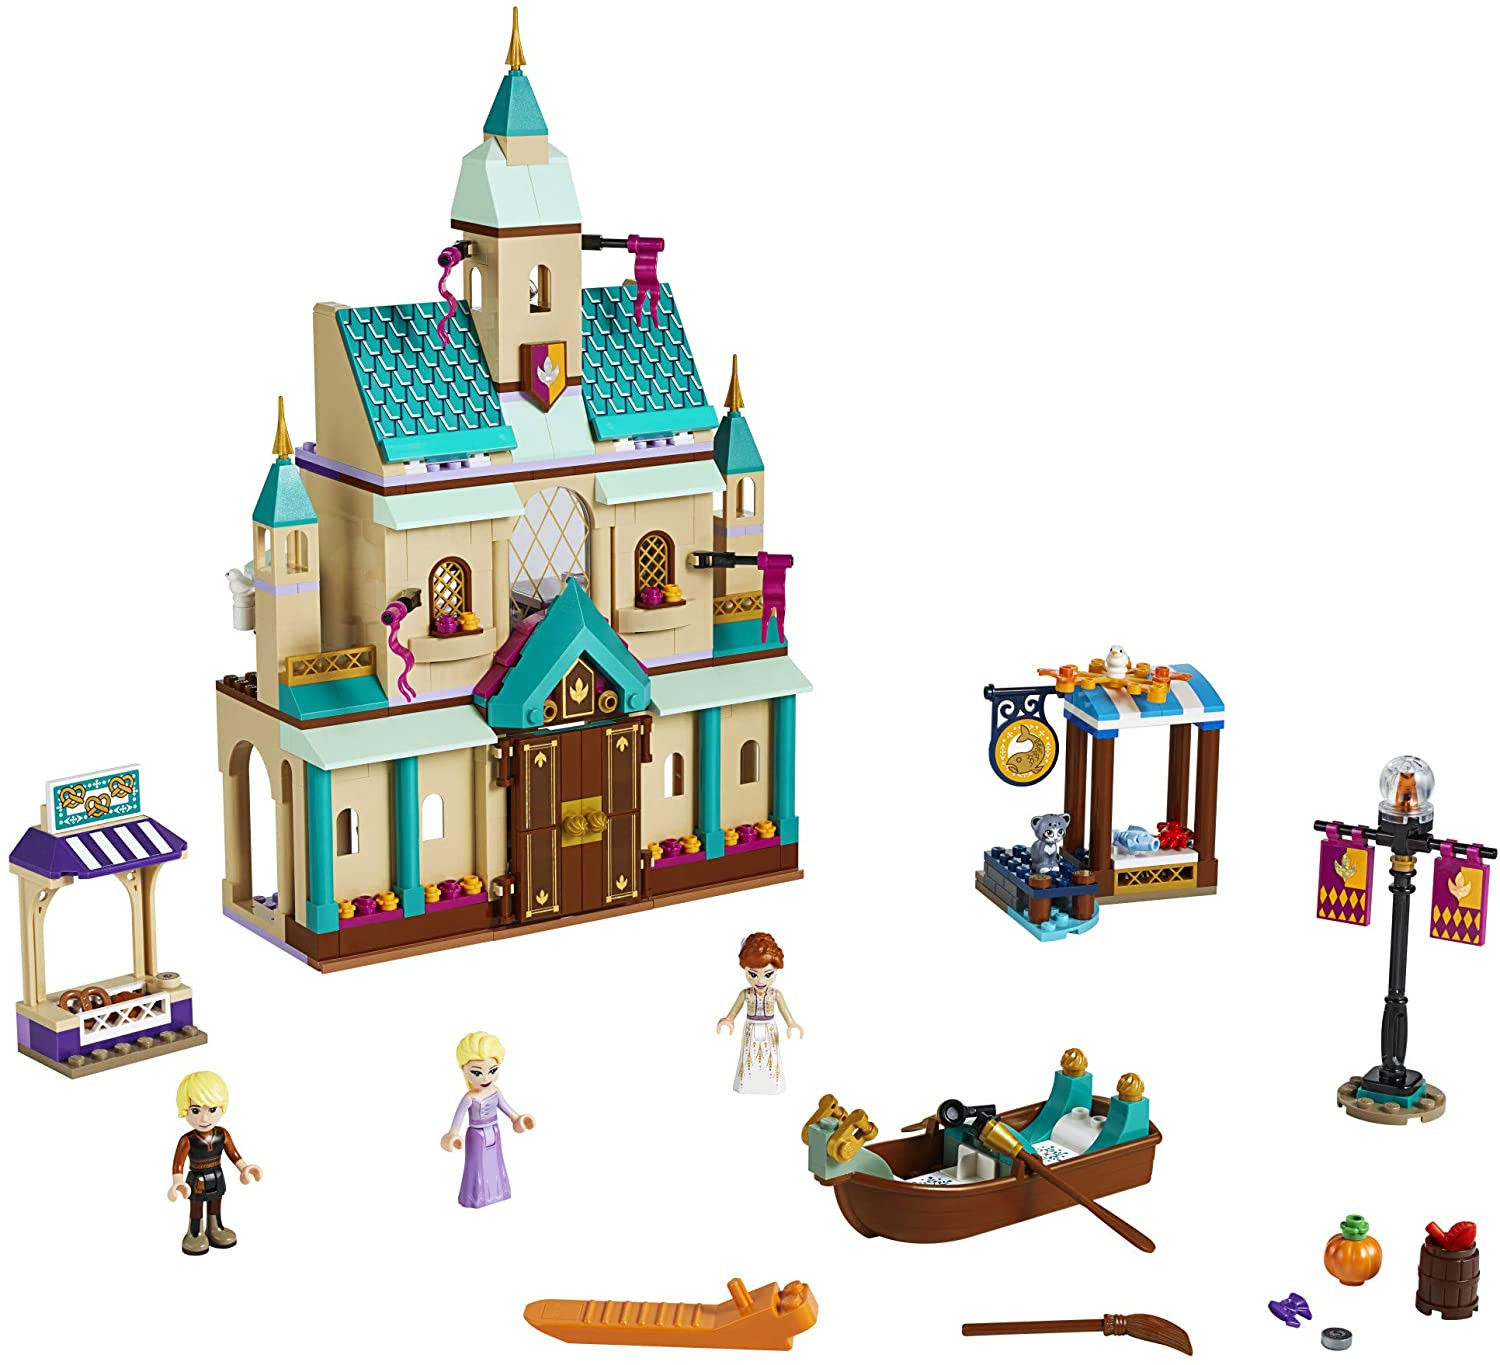 Arendelle Castle Village Building Set by LEGO Frozen 2 (521 pcs)